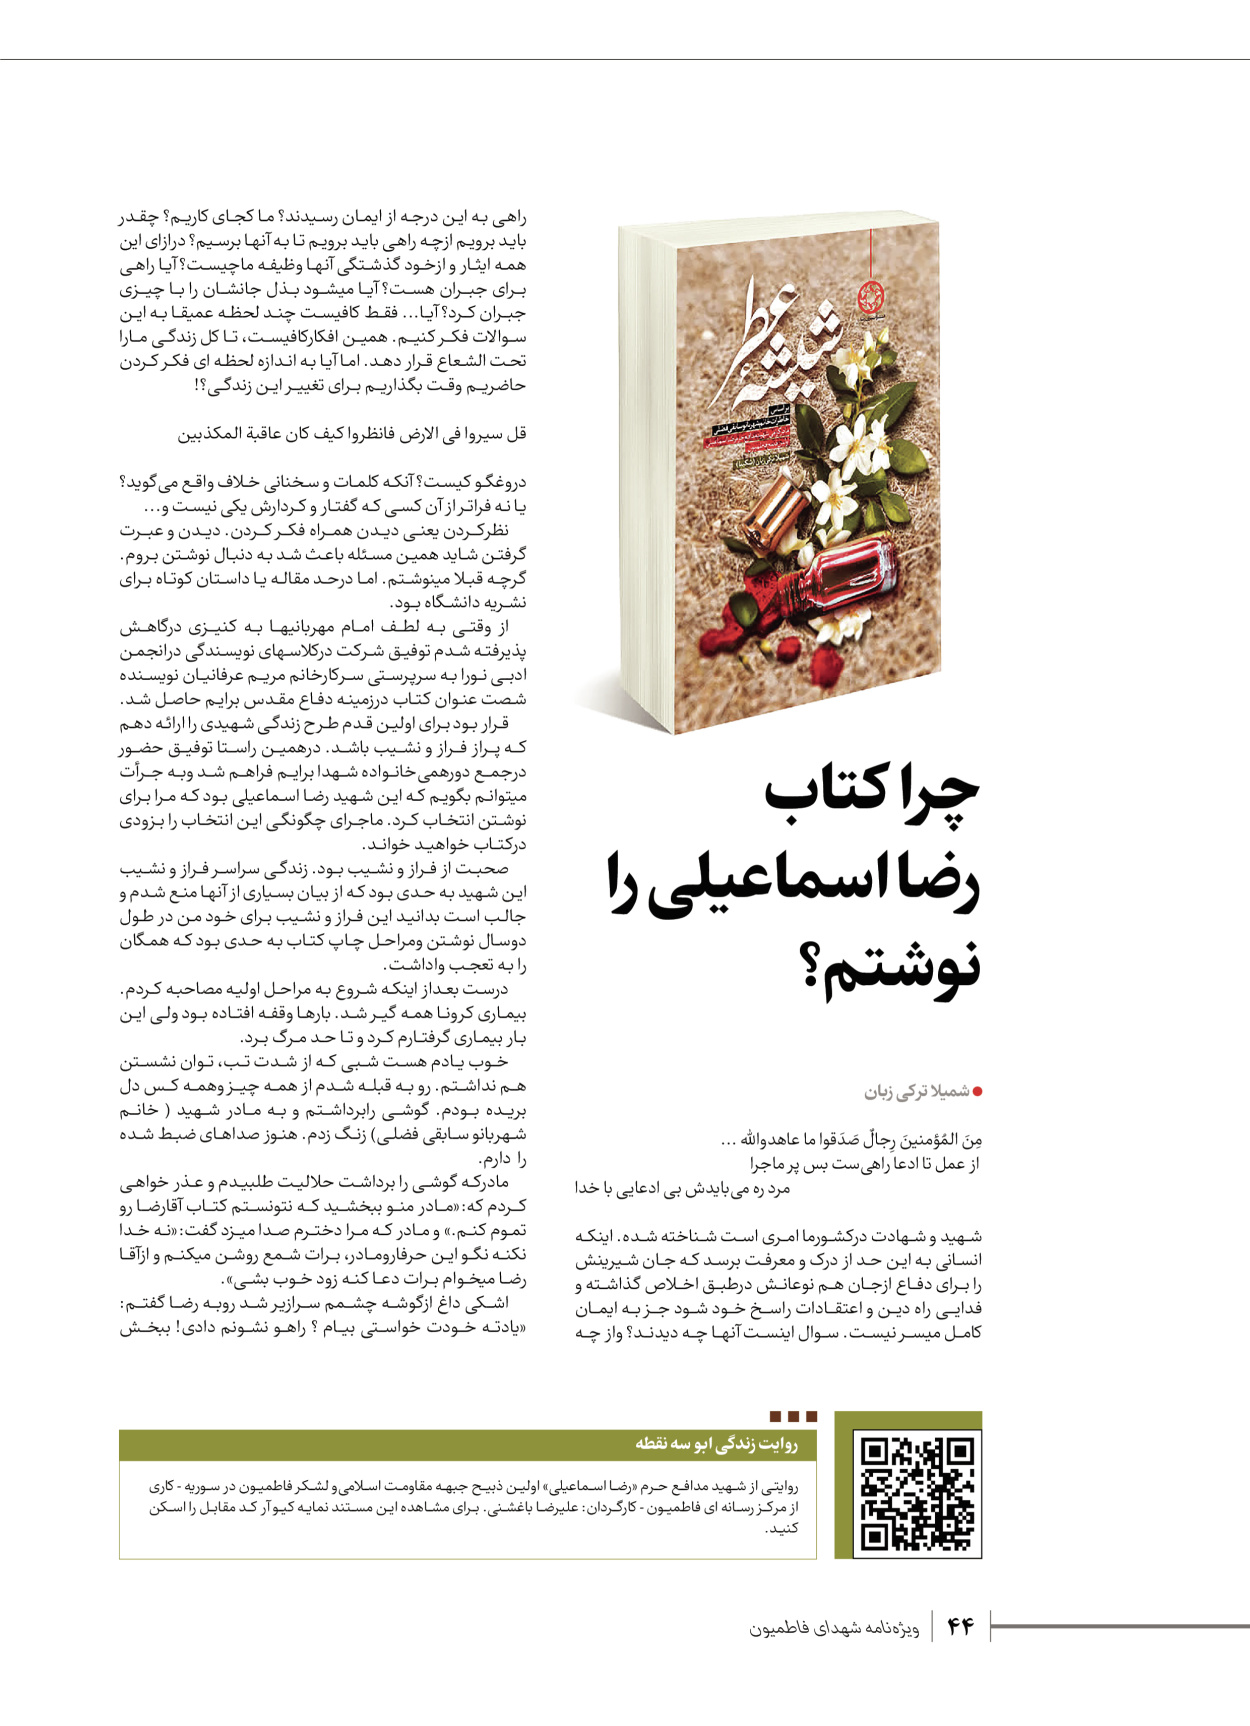 روزنامه ایران - ویژه نامه شهدای قدس ۵ - ۱۹ اسفند ۱۴۰۲ - صفحه ۴۴